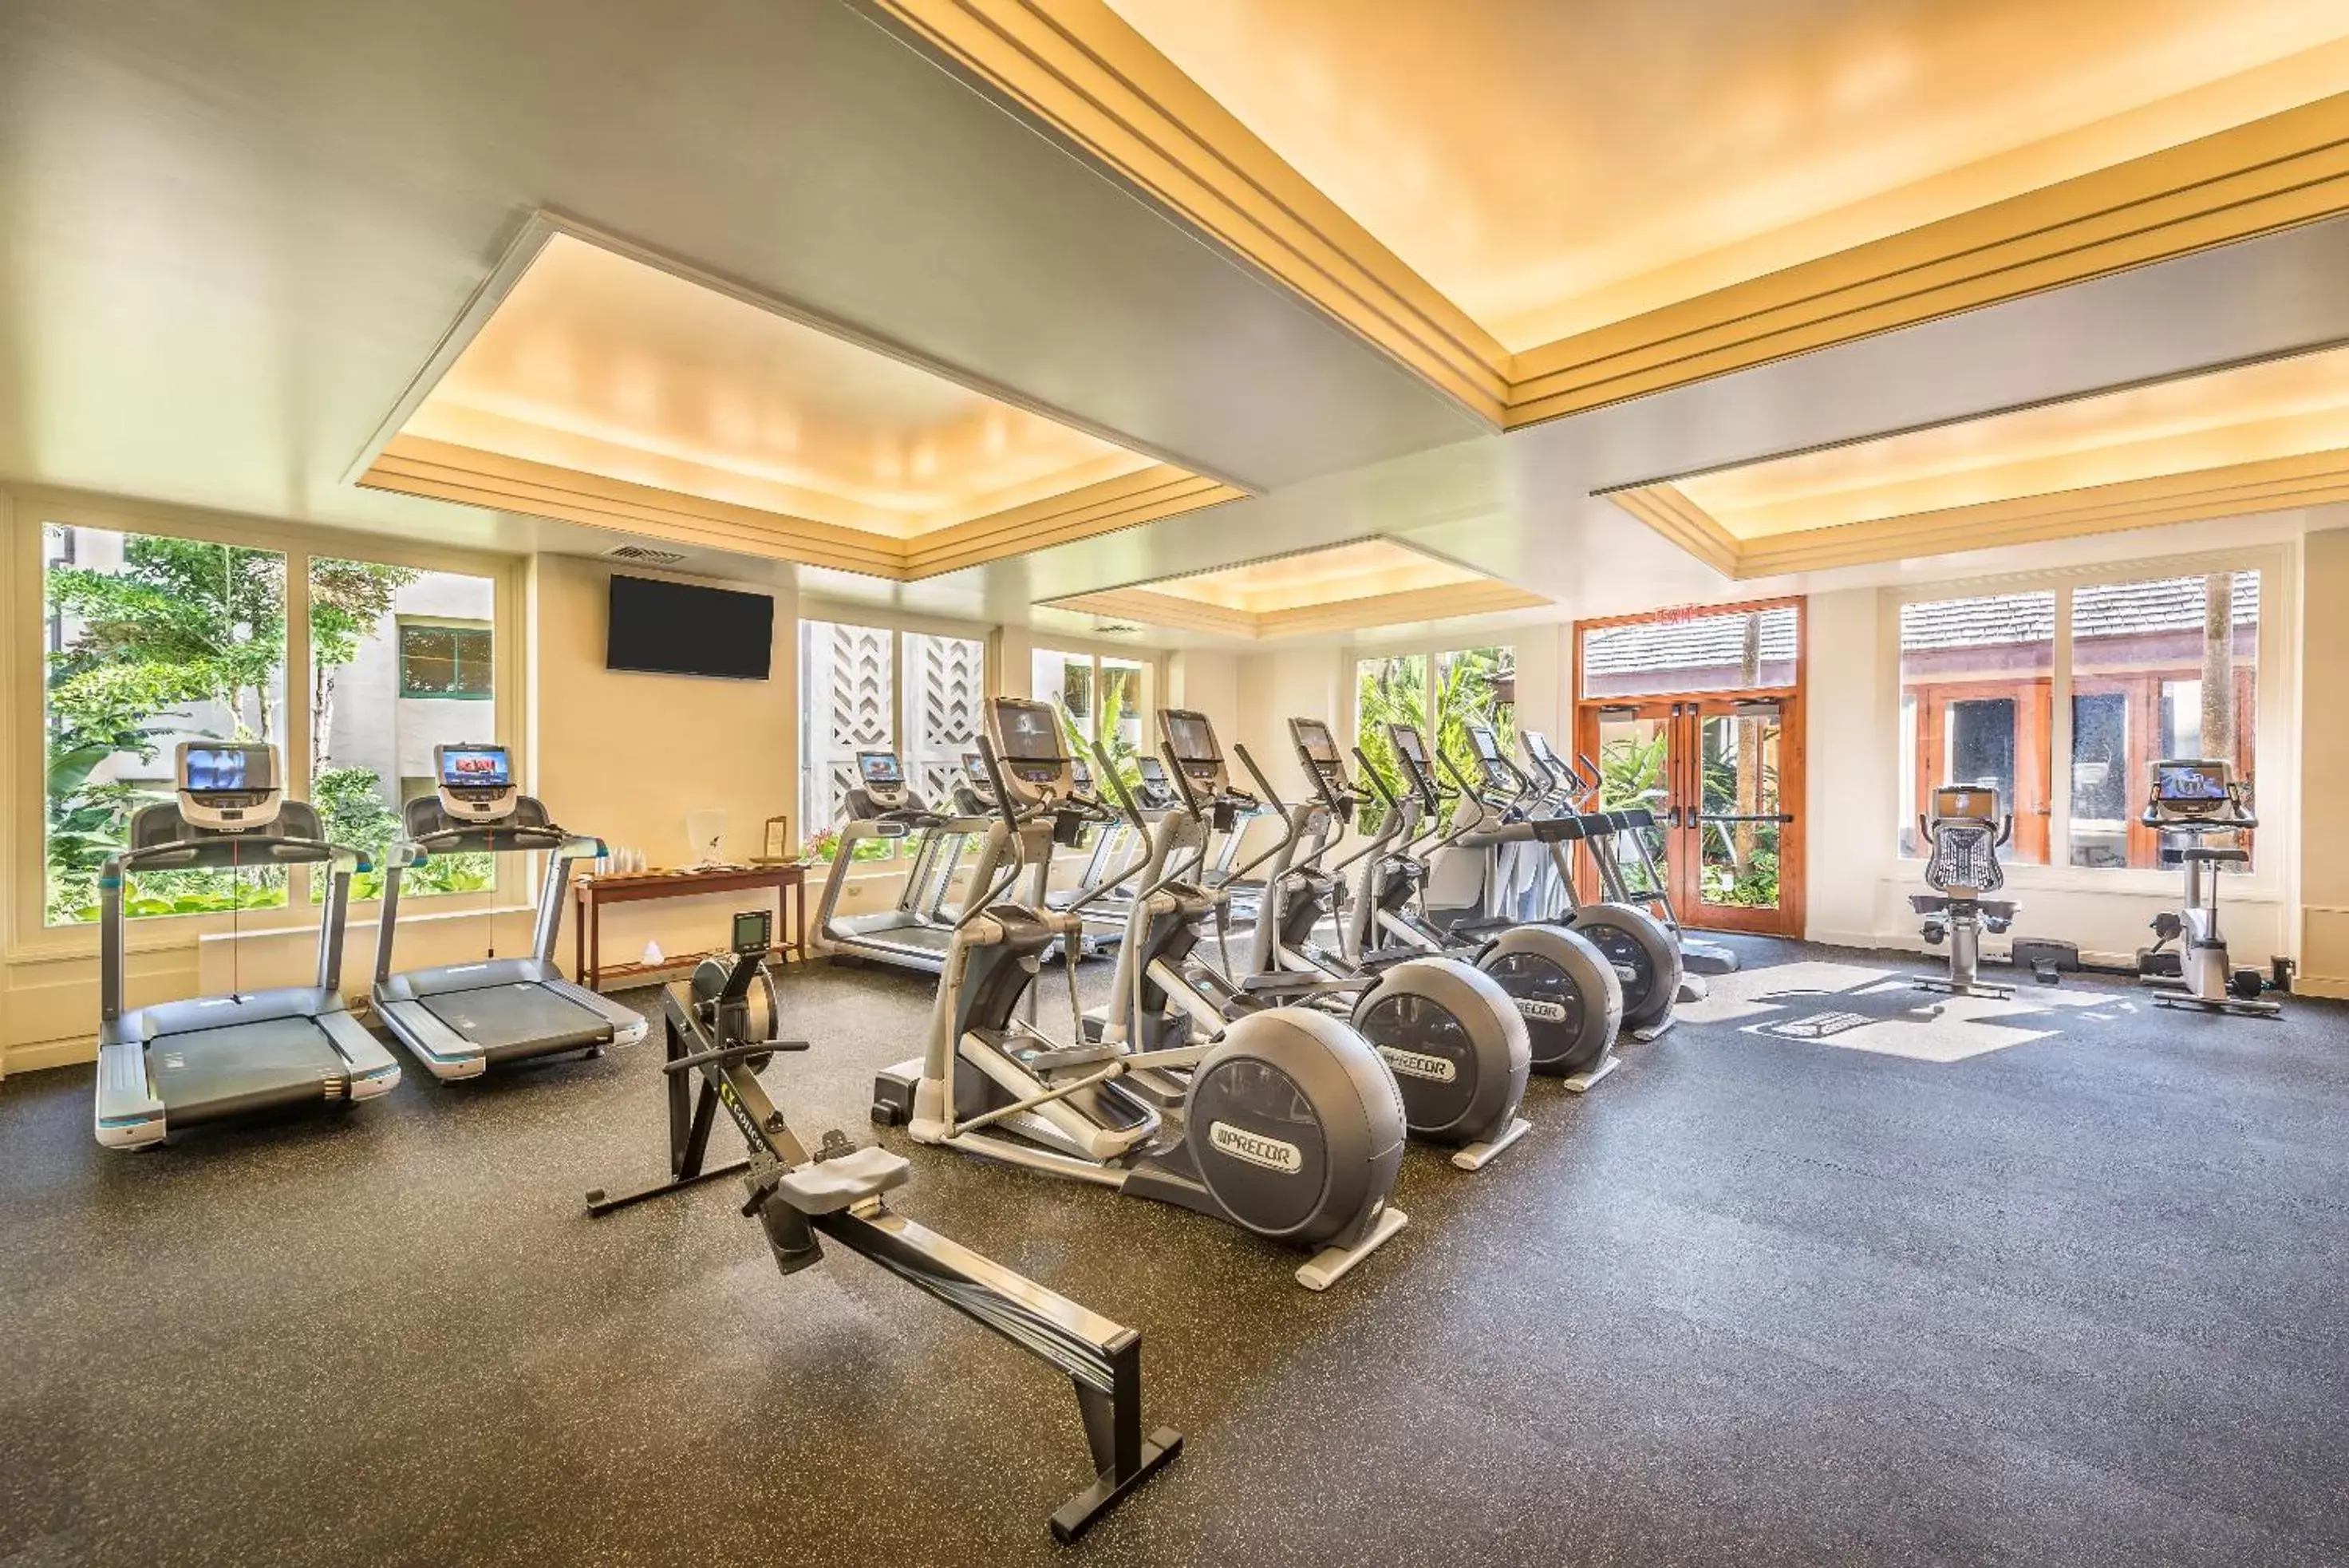 Fitness centre/facilities, Fitness Center/Facilities in Grand Hyatt Kauai Resort & Spa